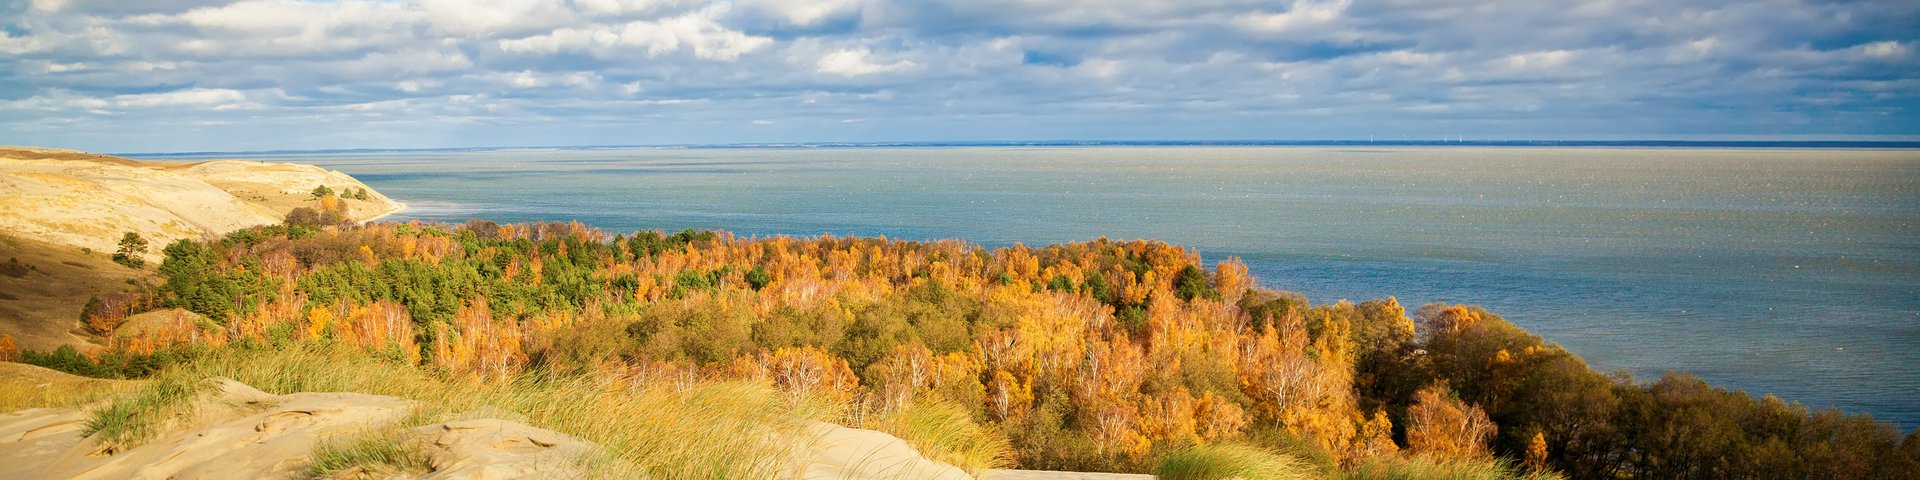 Sanddüne der Kurischen Nehrung und das Meer in Litauen